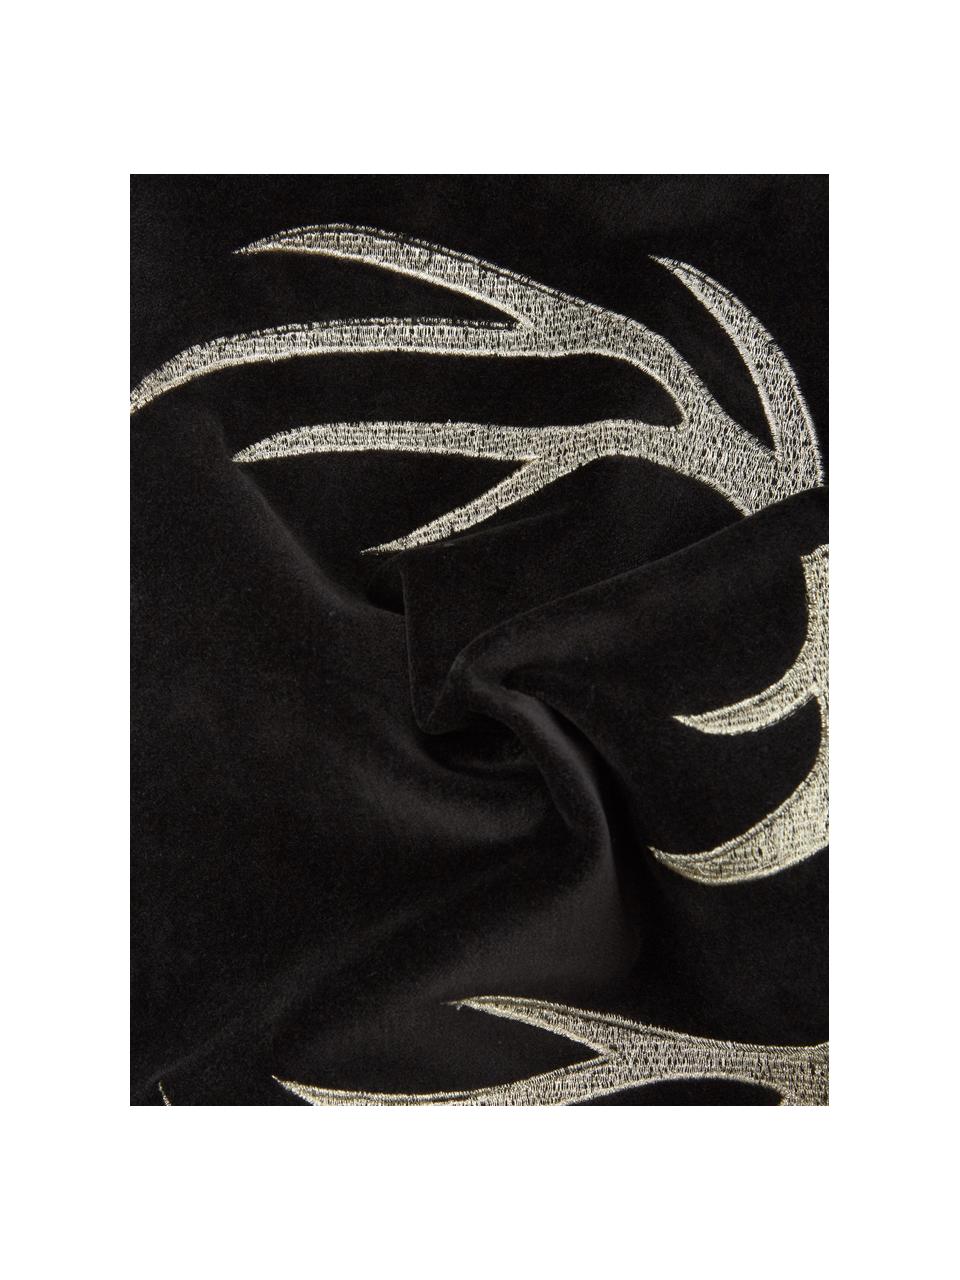 Cuscino in velluto nero ricamato con motivo cervo Antler, Rivestimento: 100% velluto di cotone, Nero, beige, Larg. 30 x Lung. 50 cm